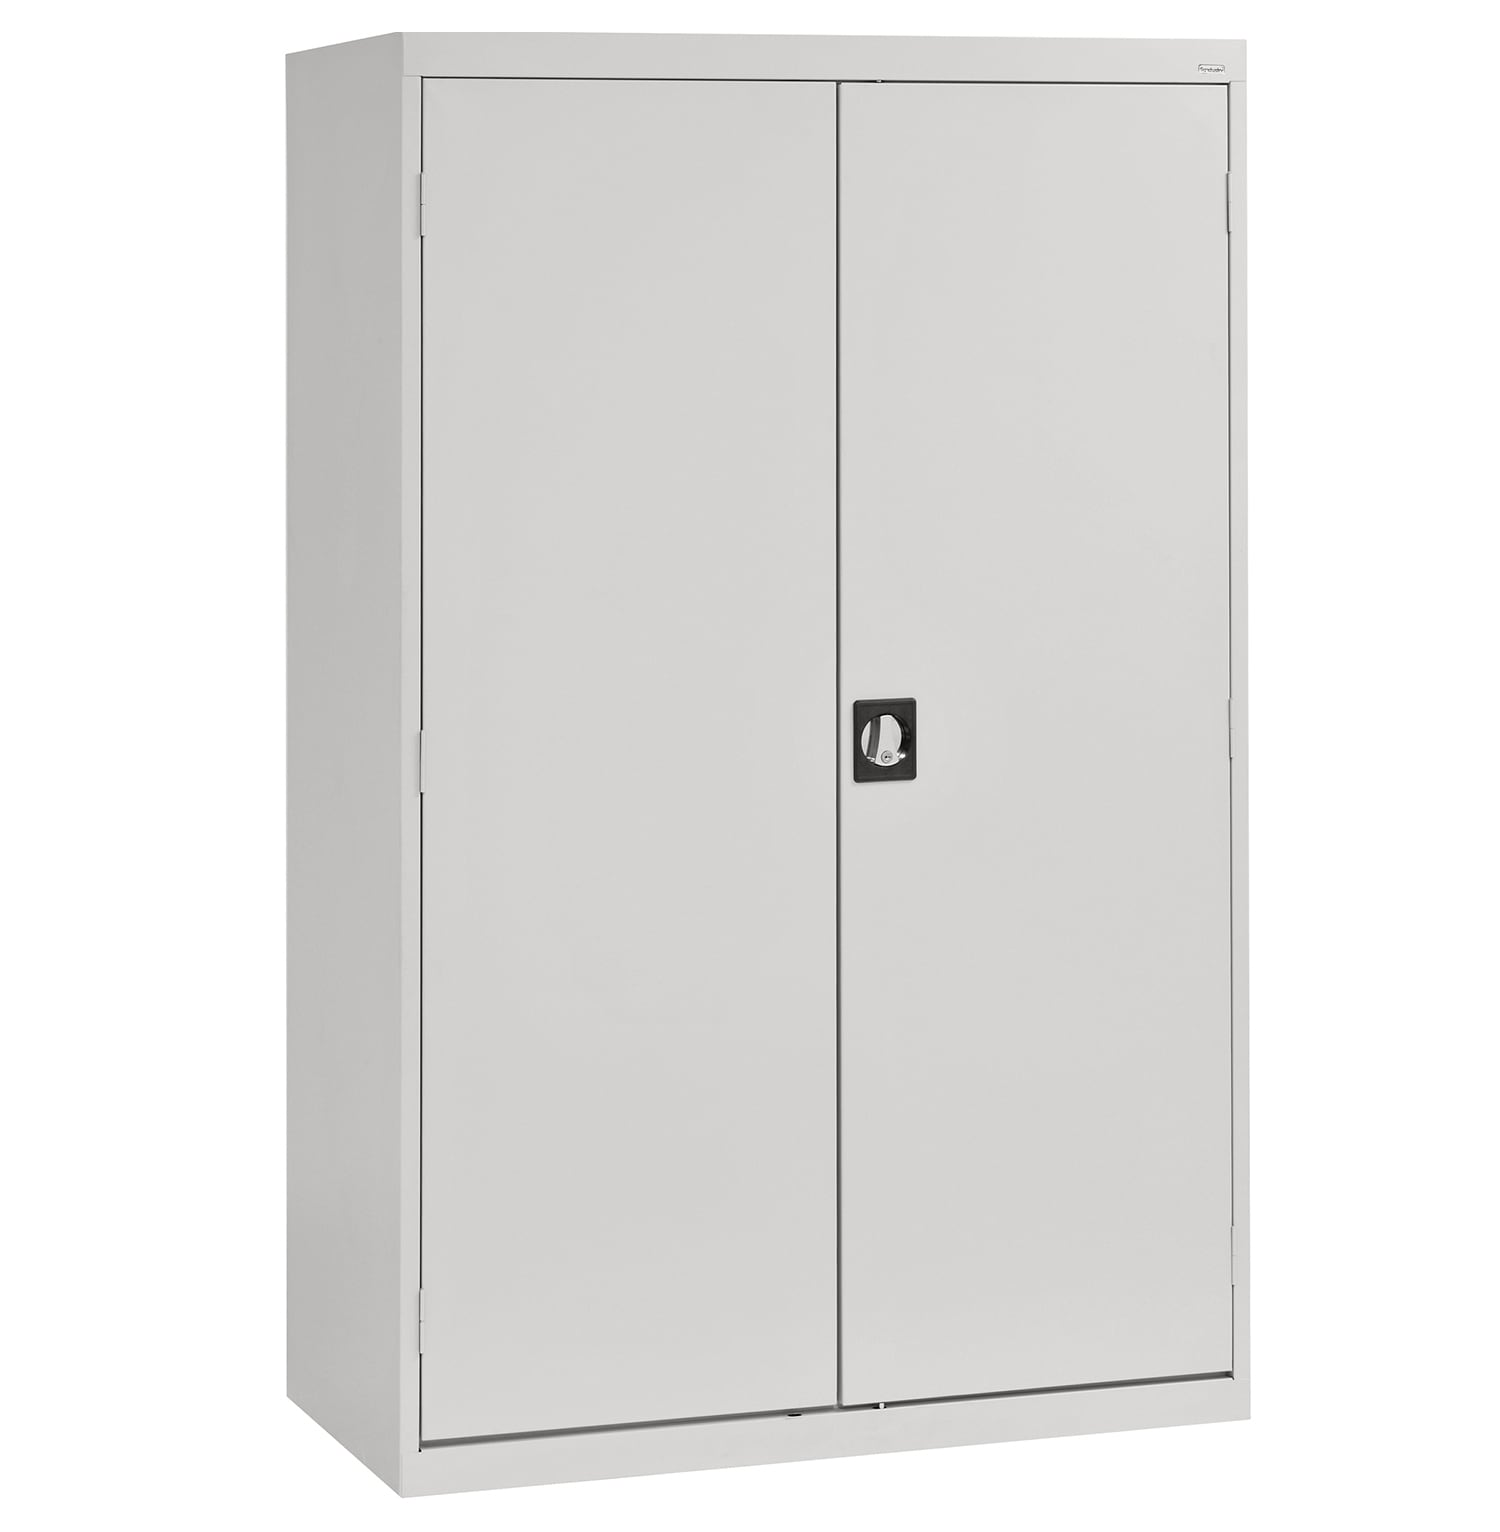 Steel Freestanding Garage Cabinet in Gray (46-in W x 72-in H x 24-in D) | - Sandusky EACR462472-05